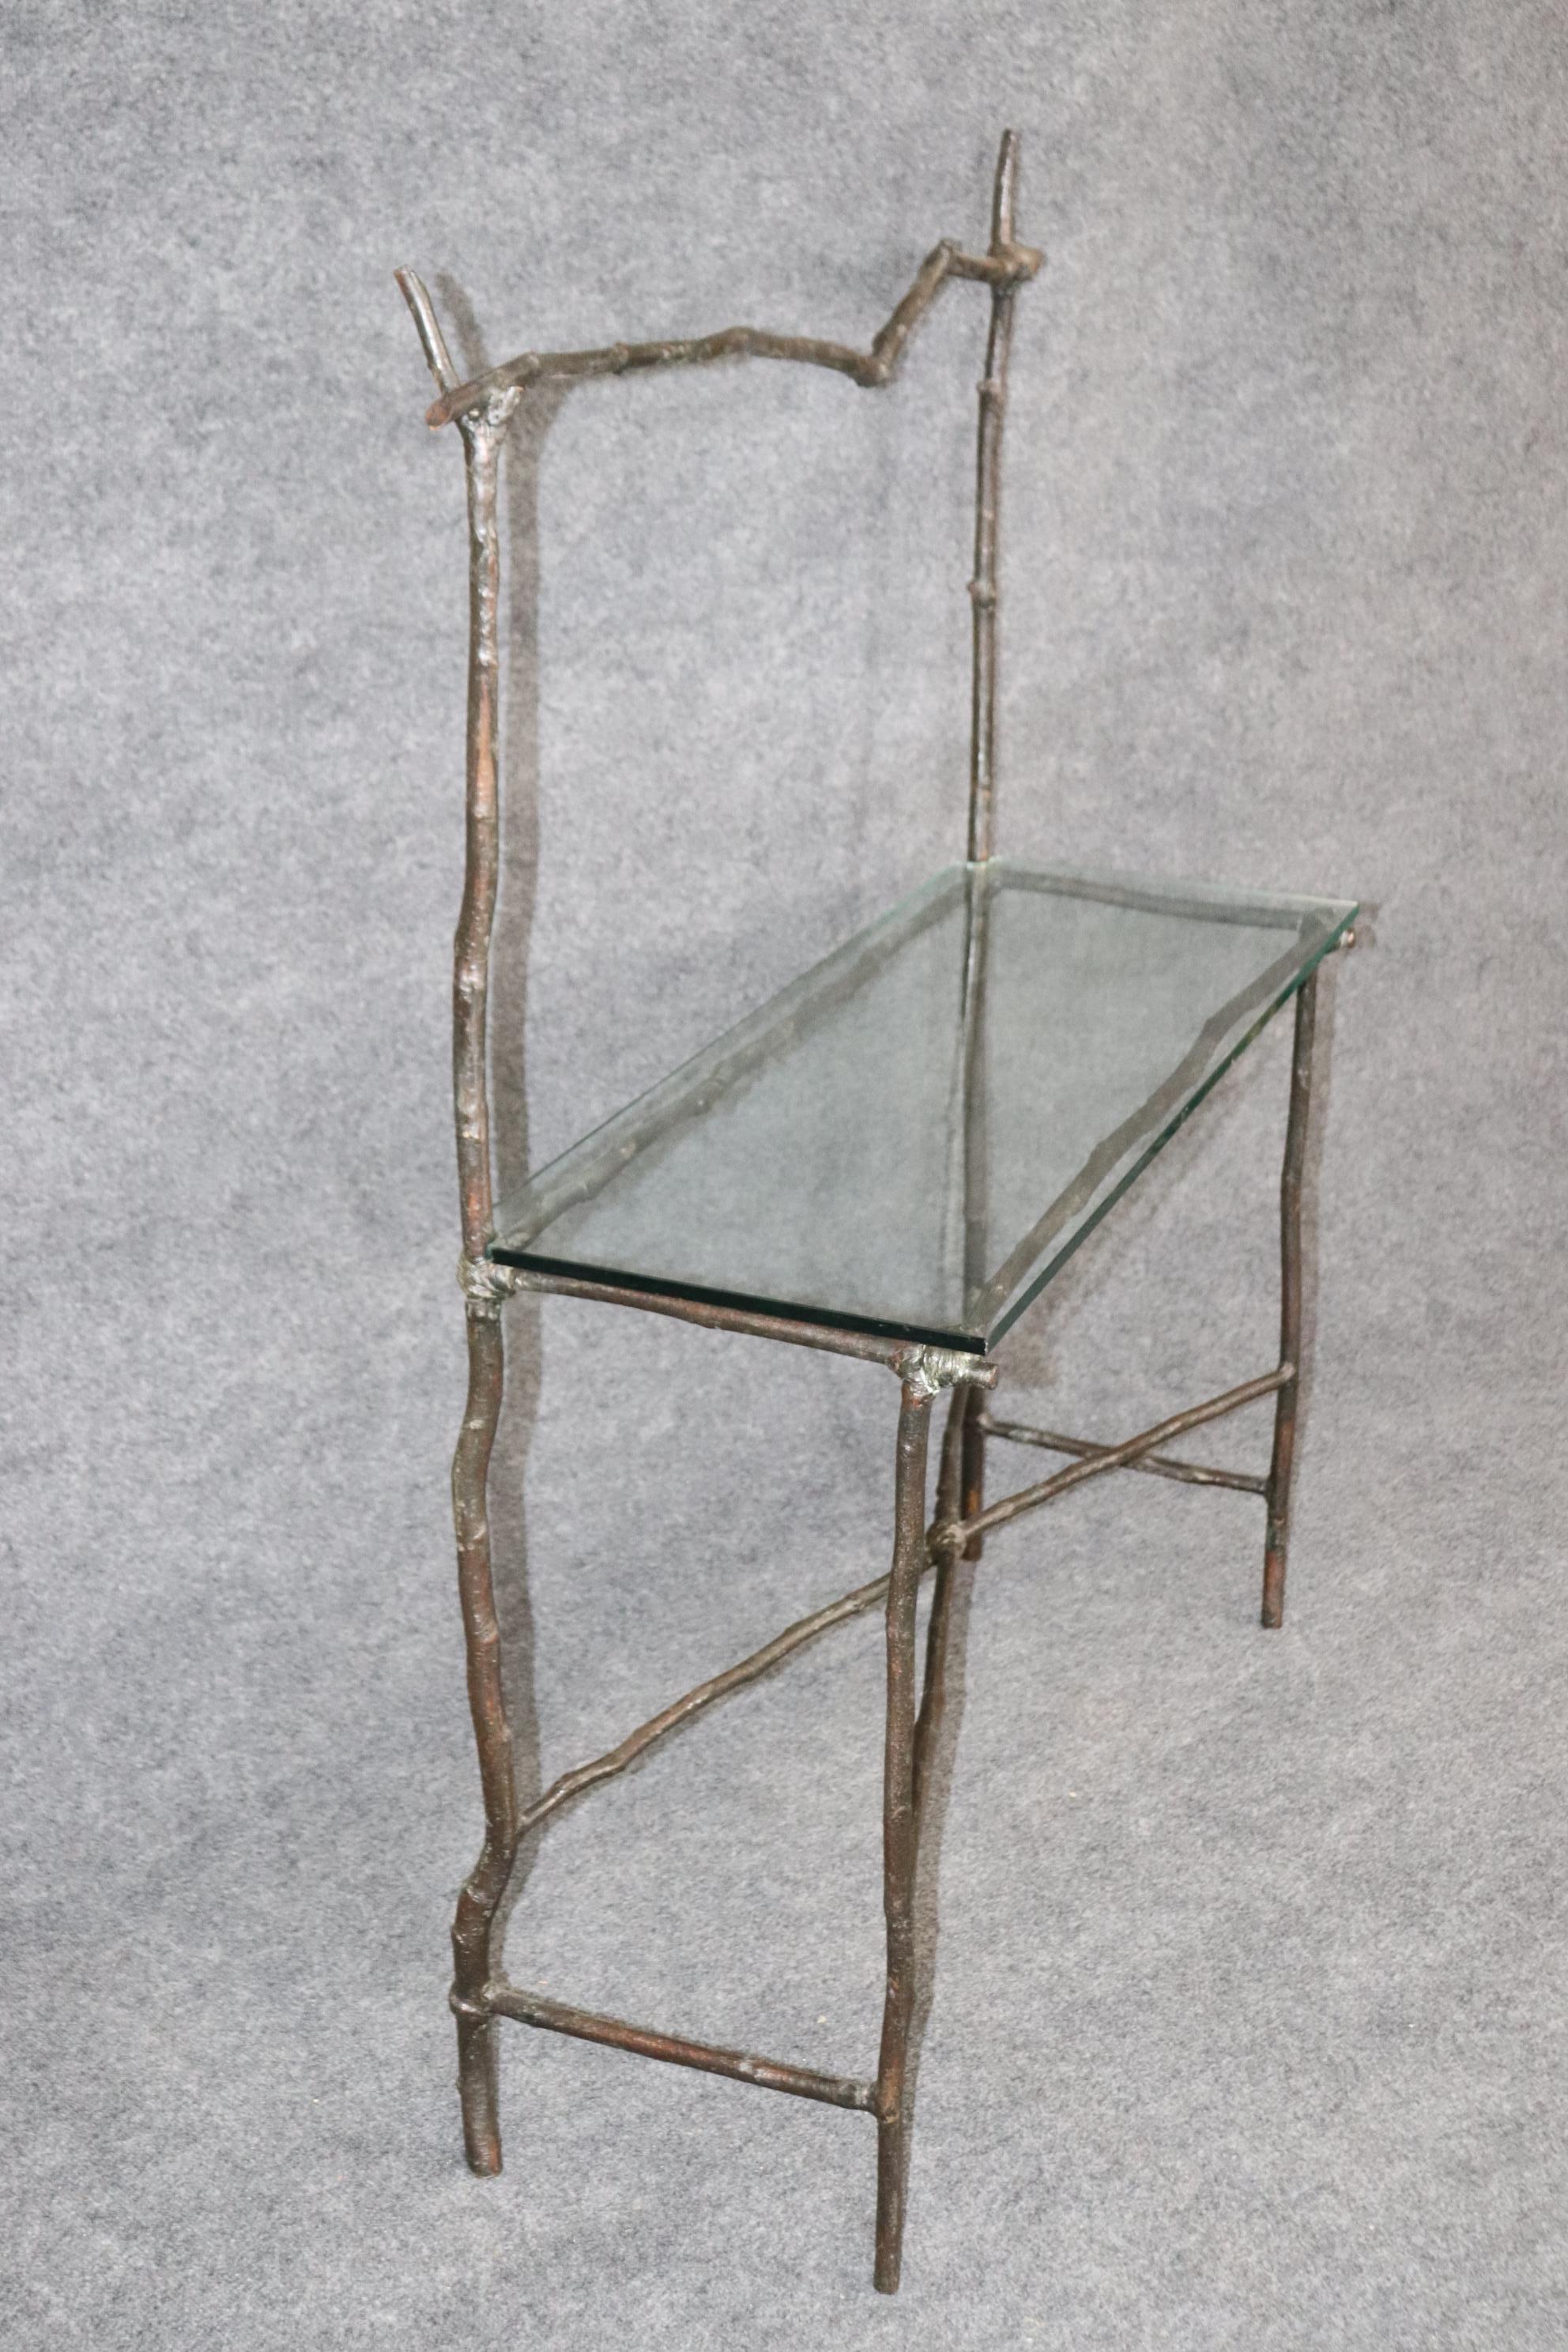 Dies ist eine einzigartige faux bois Zweig Form Giacometti Stil Konsole Tisch. Der Tisch hat einige Chips auf dem Glas, mit denen man leben kann oder die man in einem Glasgeschäft auspolieren kann. Der Tisch misst 53,5 hoch x 43,75 breit x 15 tief.